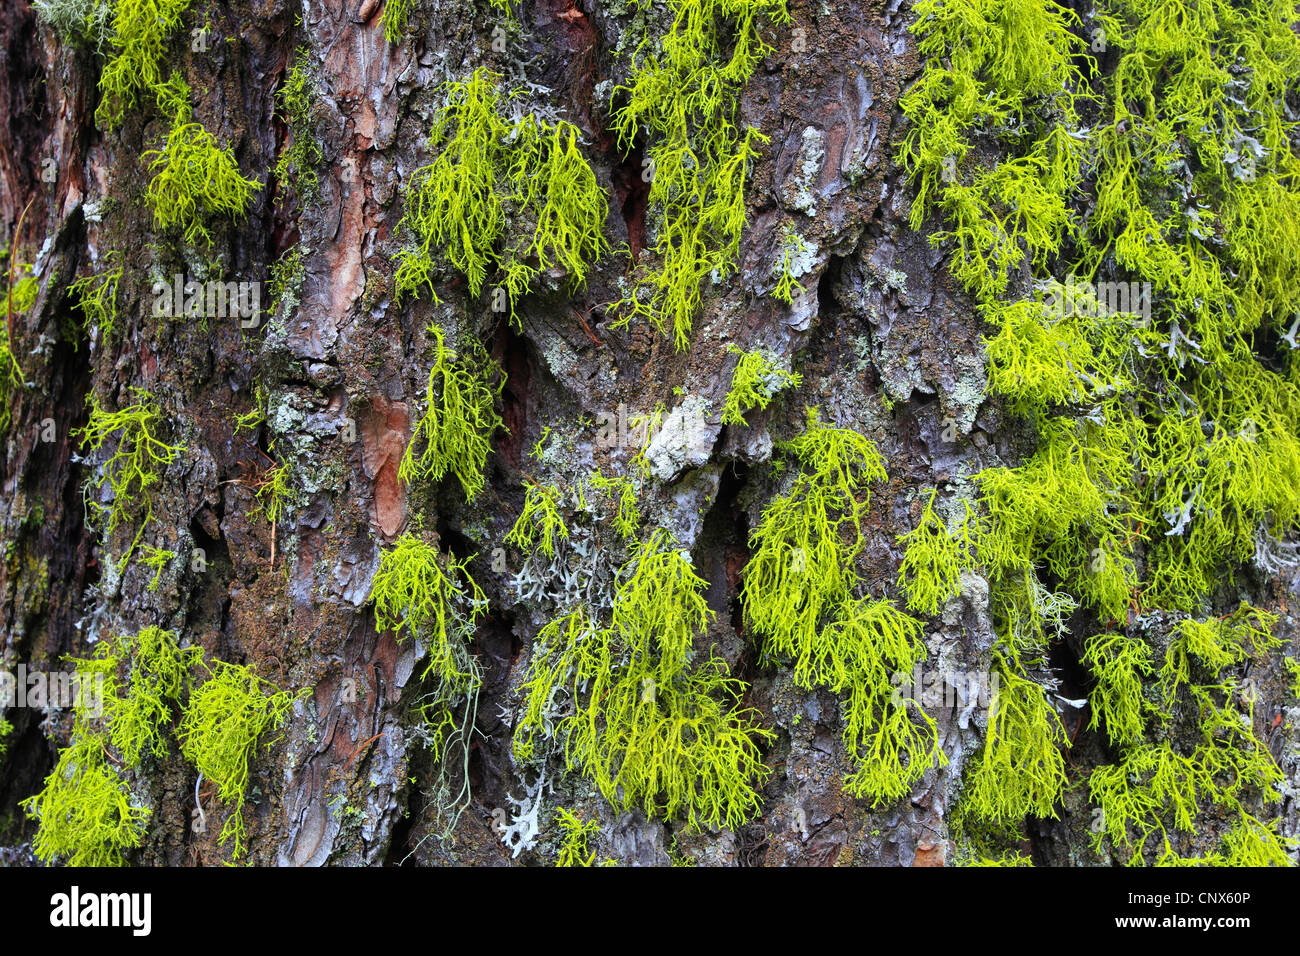 Swiss stone pine, arolla pine (Pinus cembra), bark with lichens, Switzerland, Valais Stock Photo